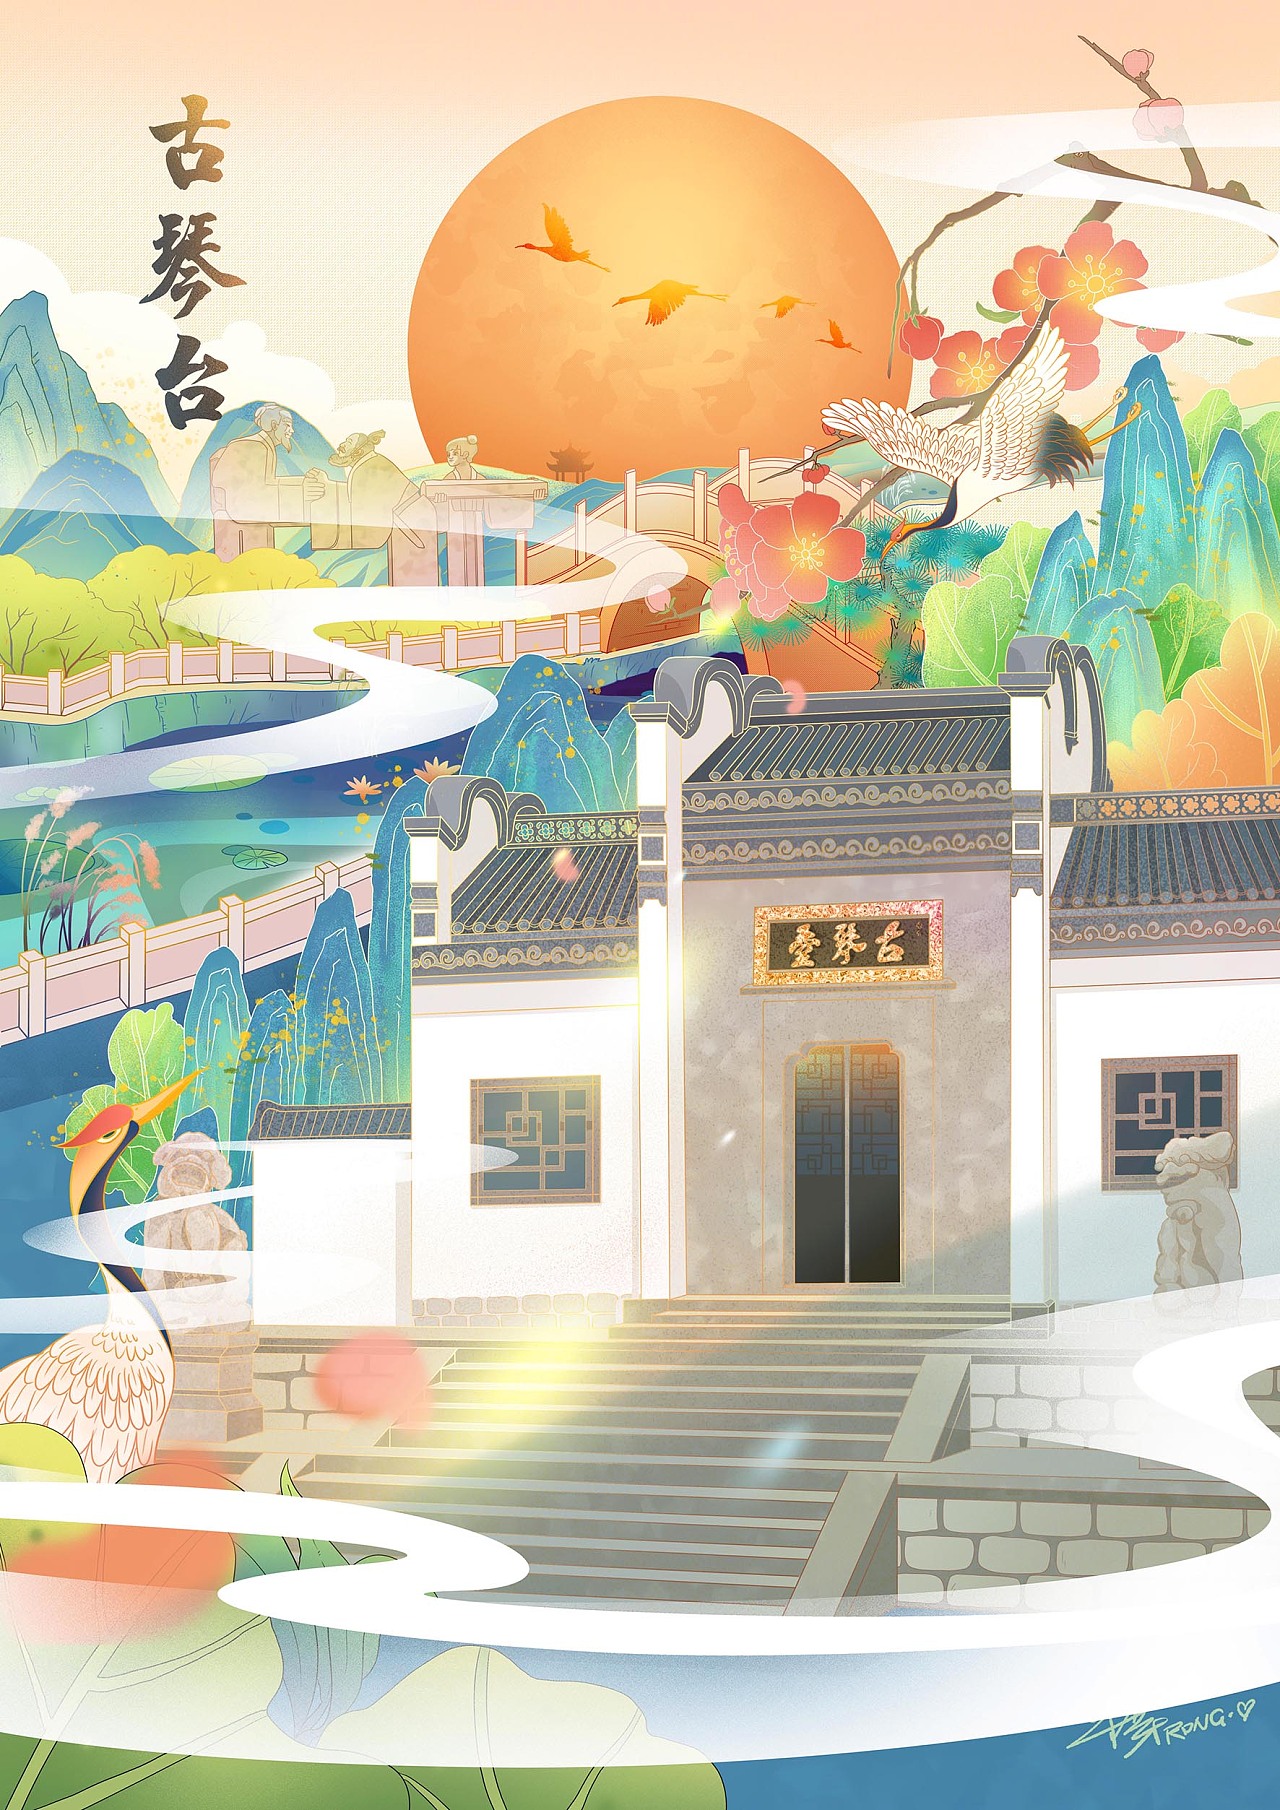 插画 武汉市标志性建筑,黄鹤楼与晴川阁,古琴台并称"武汉三大名胜""